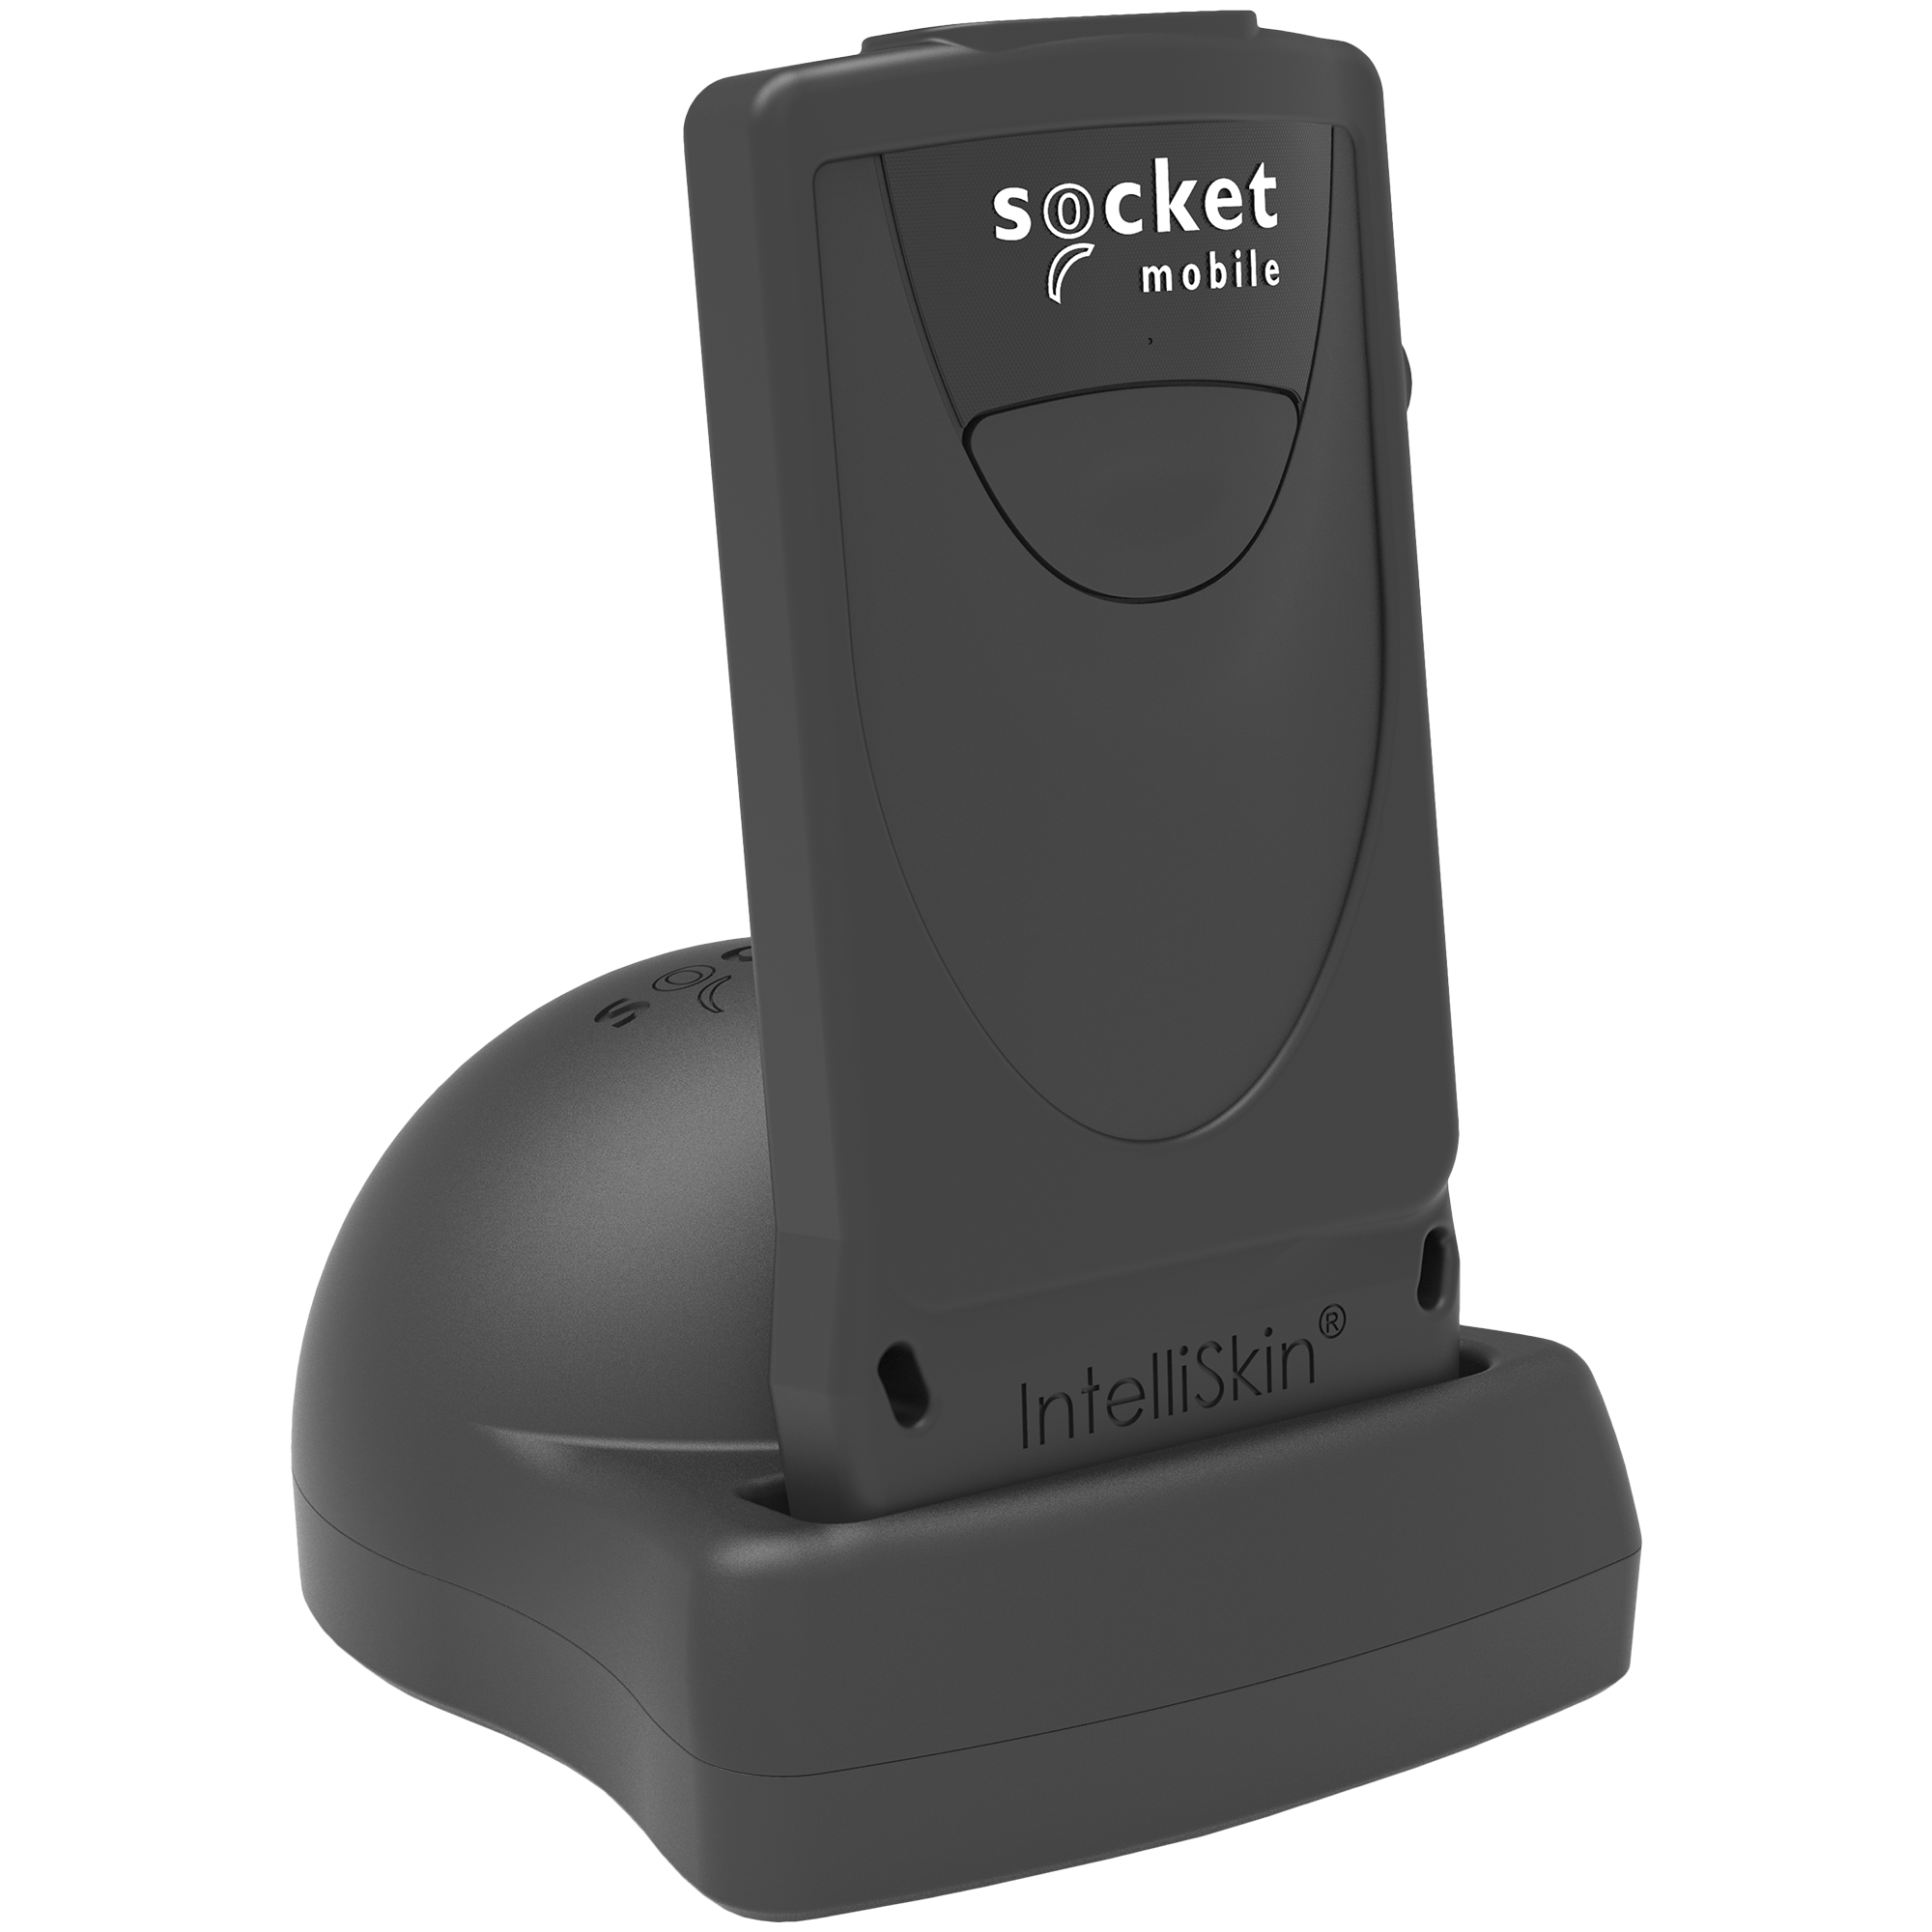 Scanner Code-barre Bluetooth 1D , Lecteur Code-barre sans fil Clipsable sur  Smartphone - Compatible IOS et Android